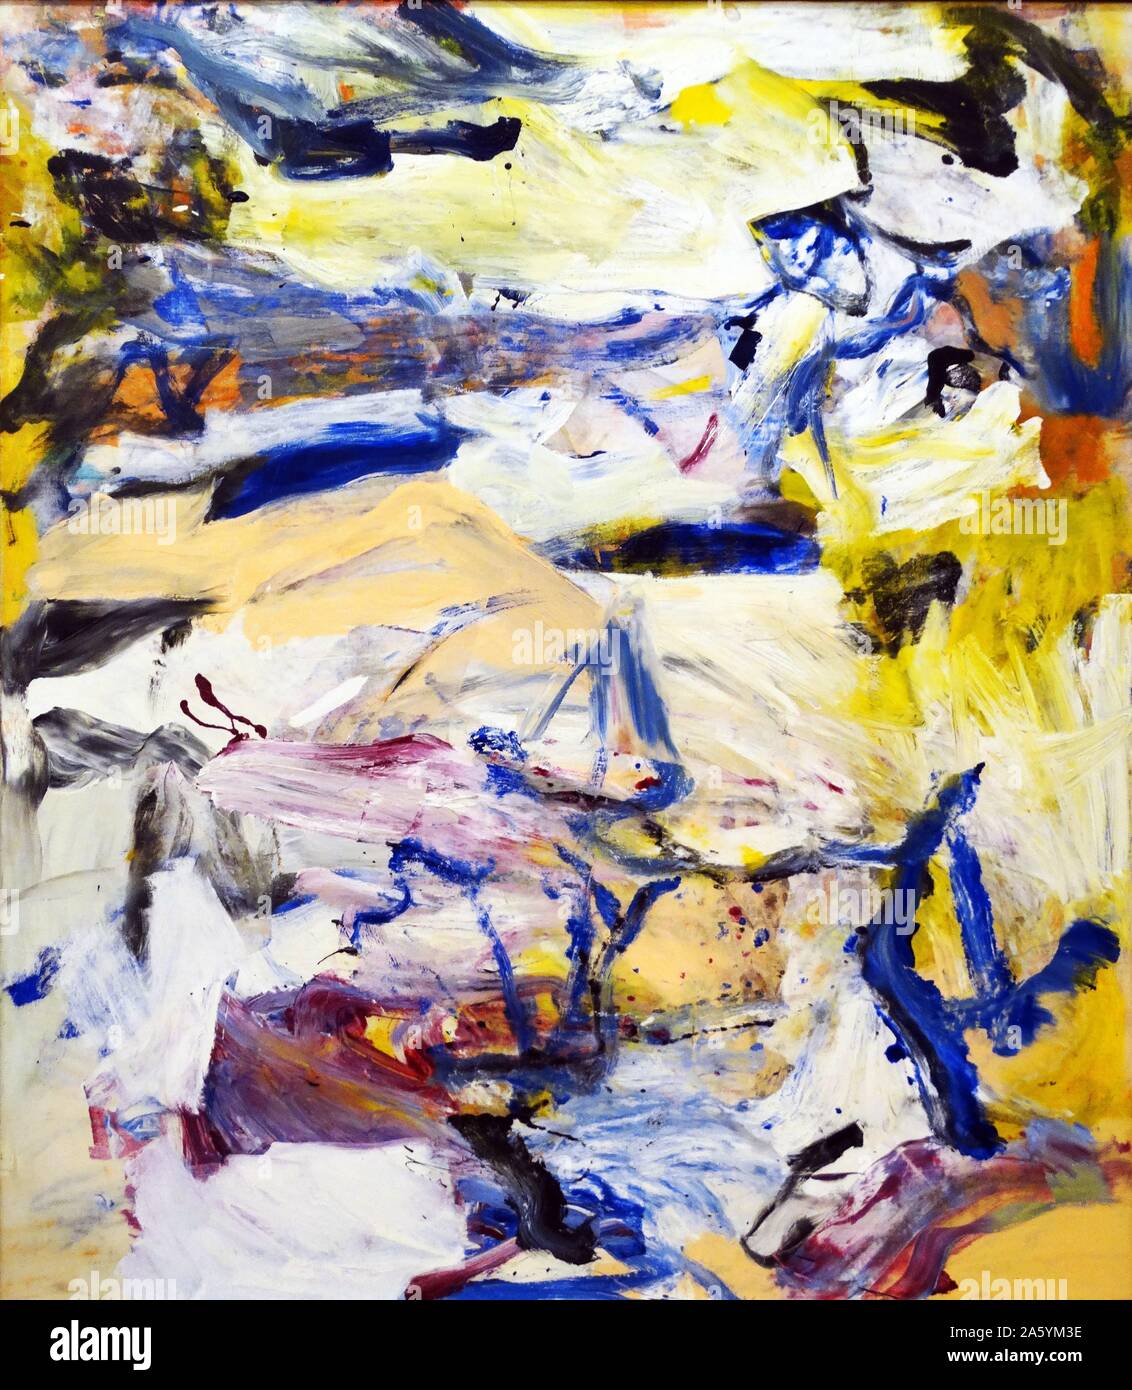 La lumière de l'Atlantique nord par Willem de Kooning (1904-1997) huile sur toile. Kooning était un artiste néerlandais expressionnisme abstrait américain. Banque D'Images